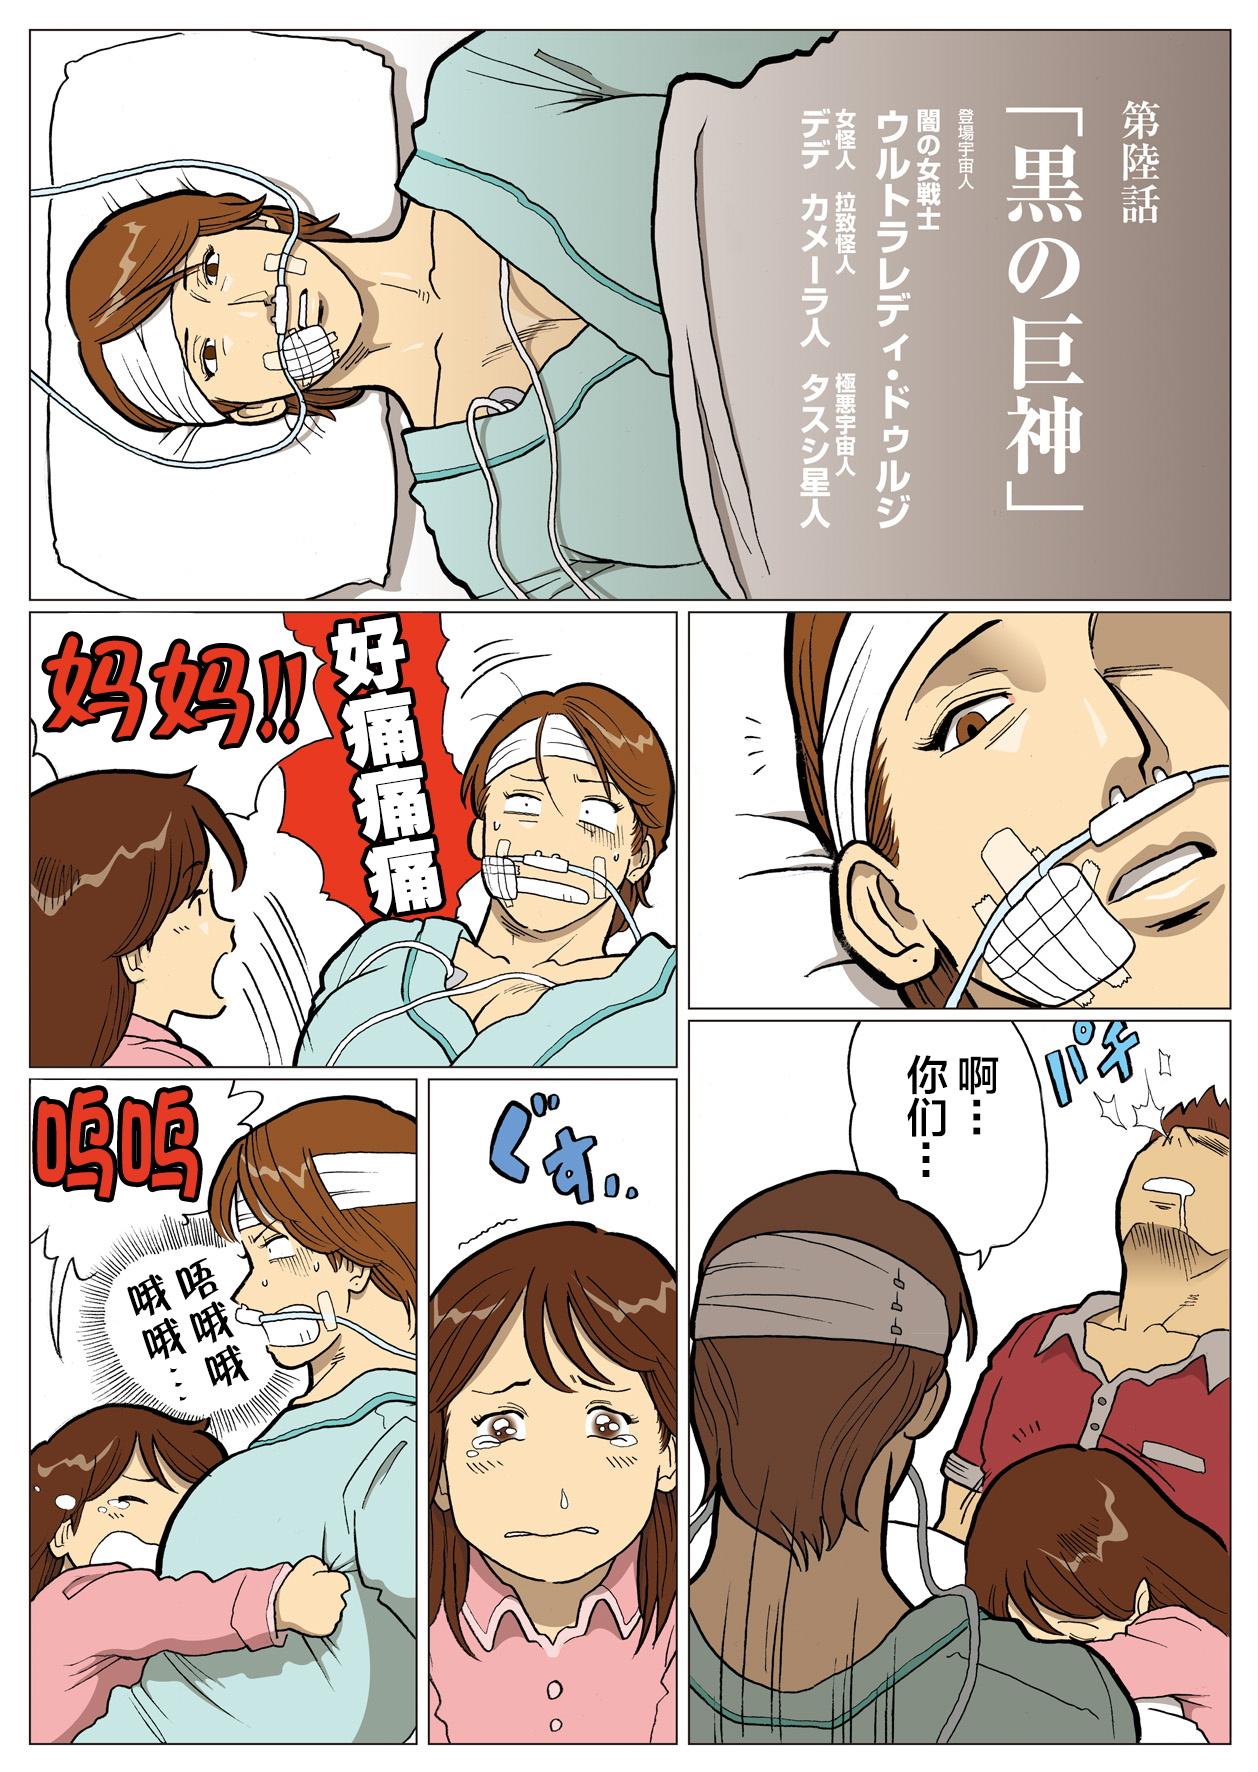 Jap Mousou Tokusatsu Series: Ultra Madam 6 - Ultraman Gag - Page 2